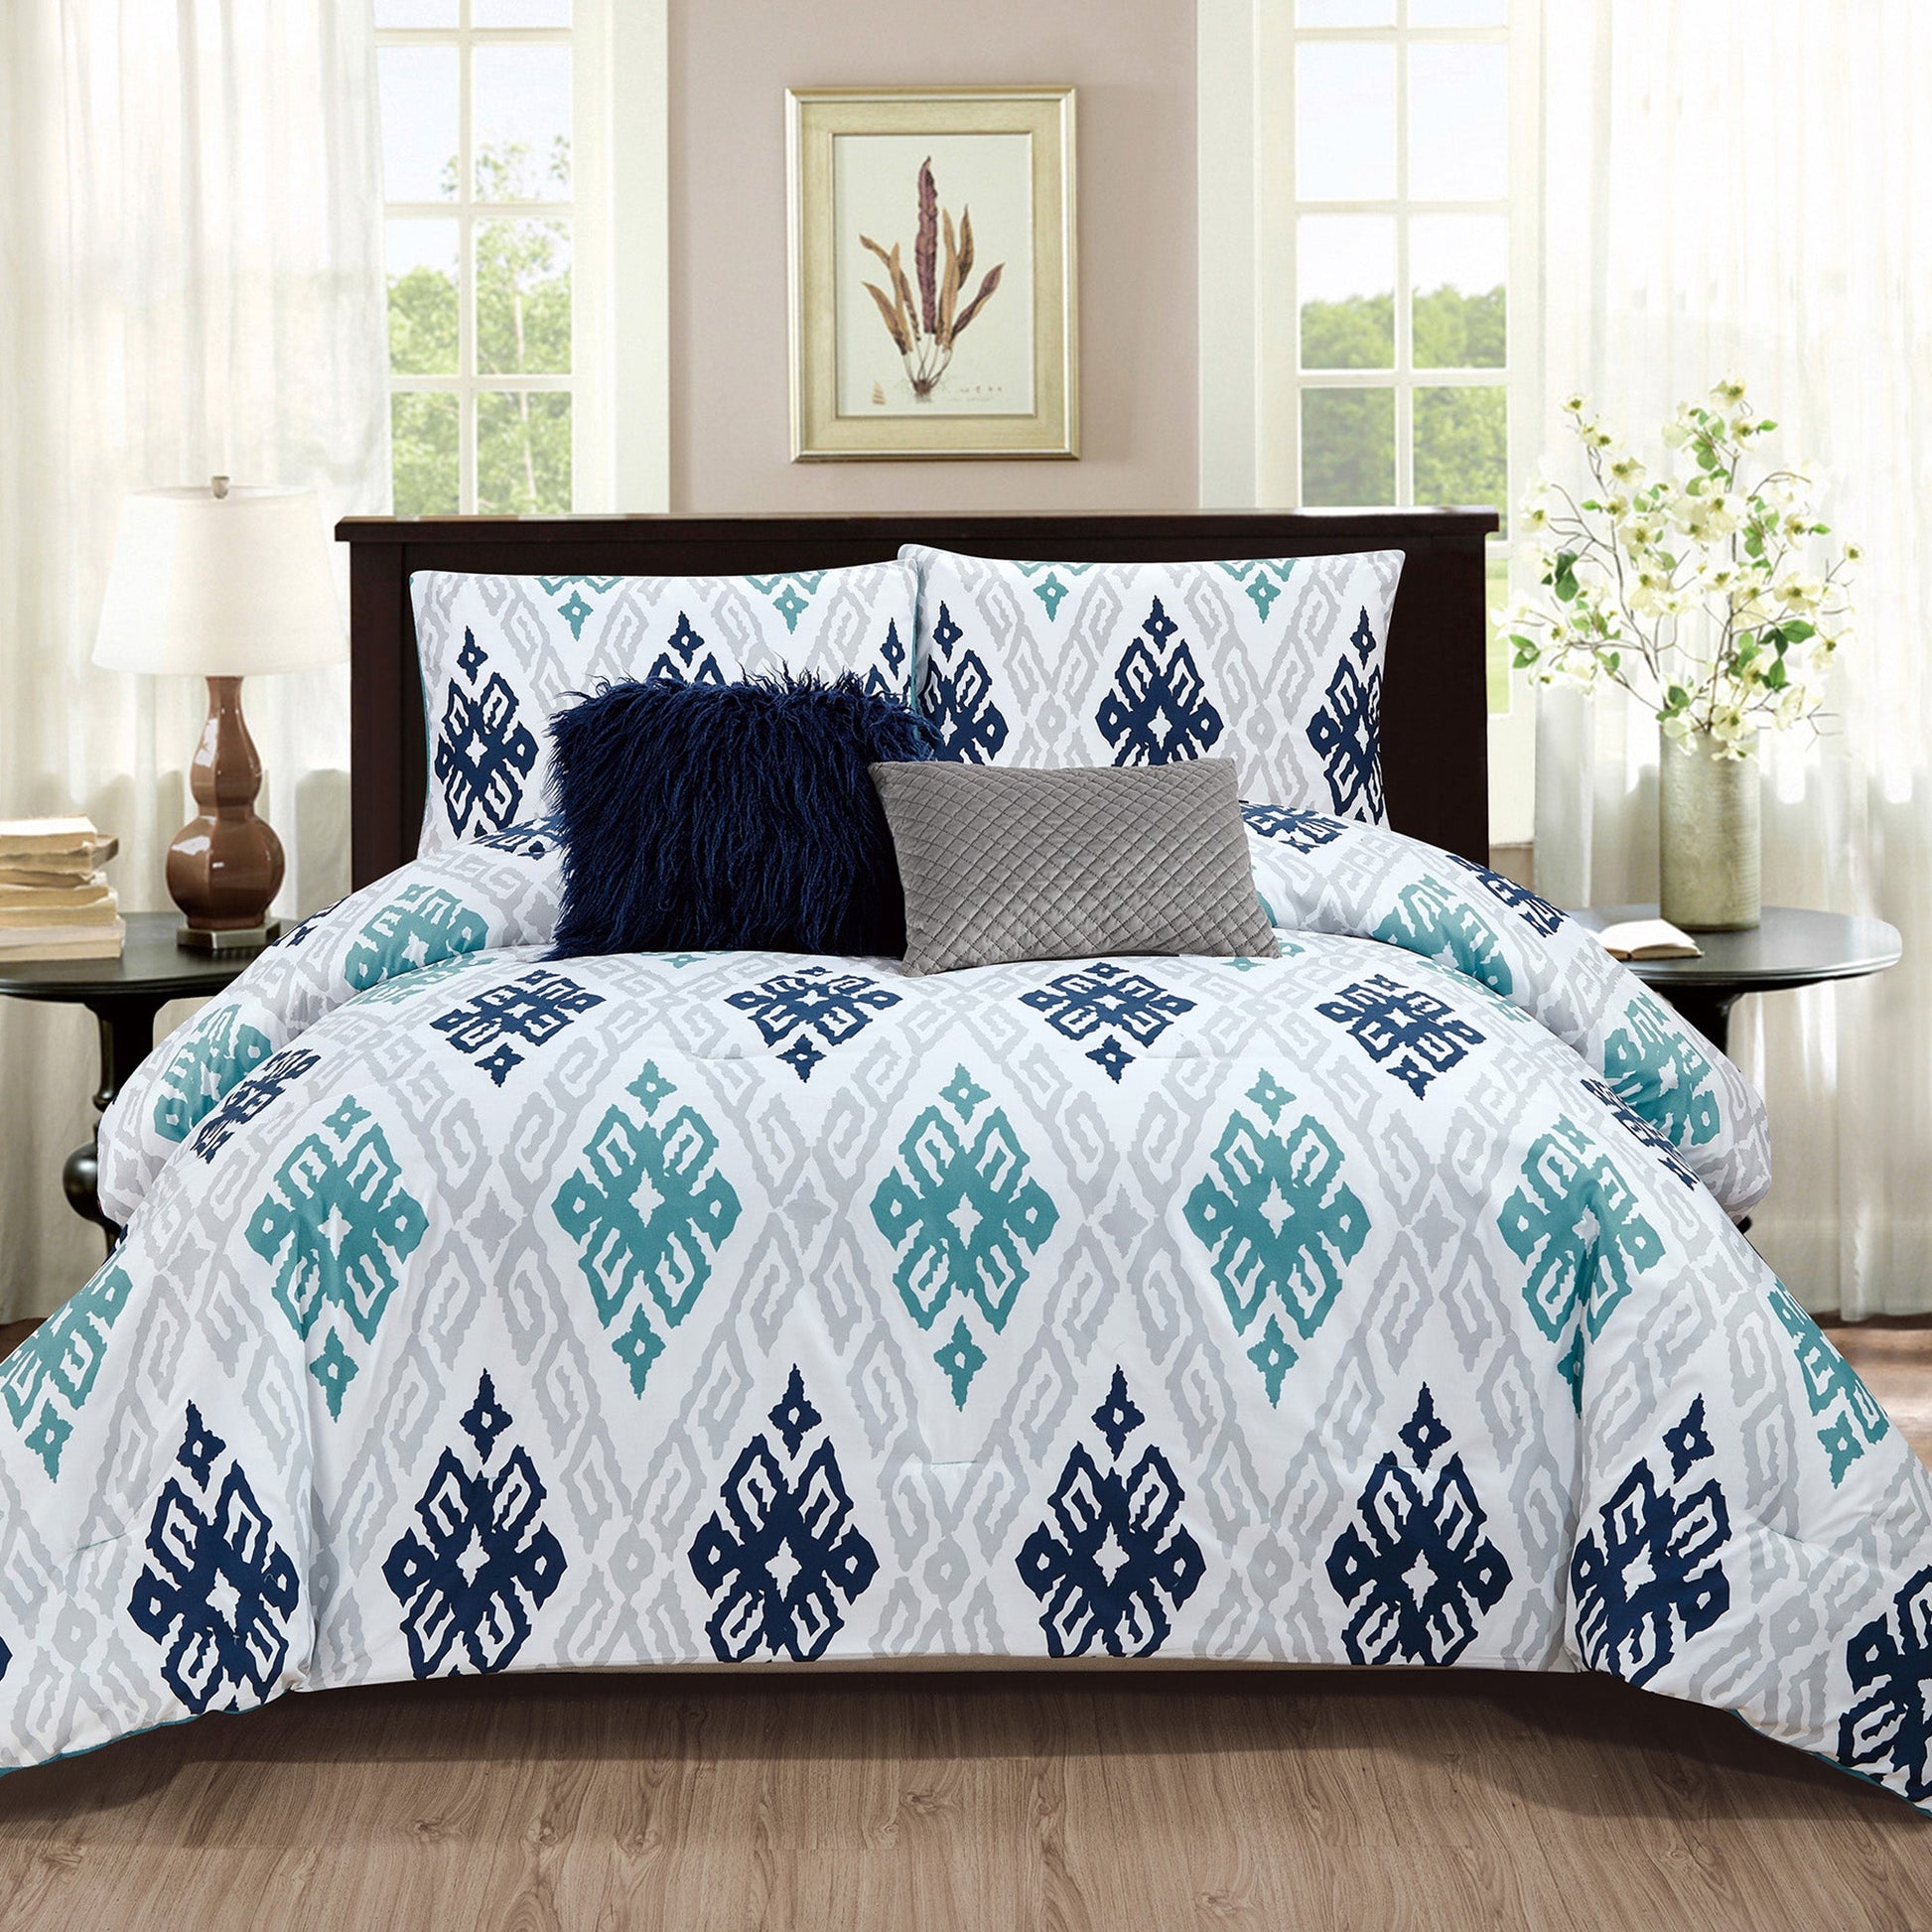 Wov Printed Microfiber Comforter Bedding Set 5 Piece Double/Queen Arizona - DecoElegance - Bedding Comforter Set